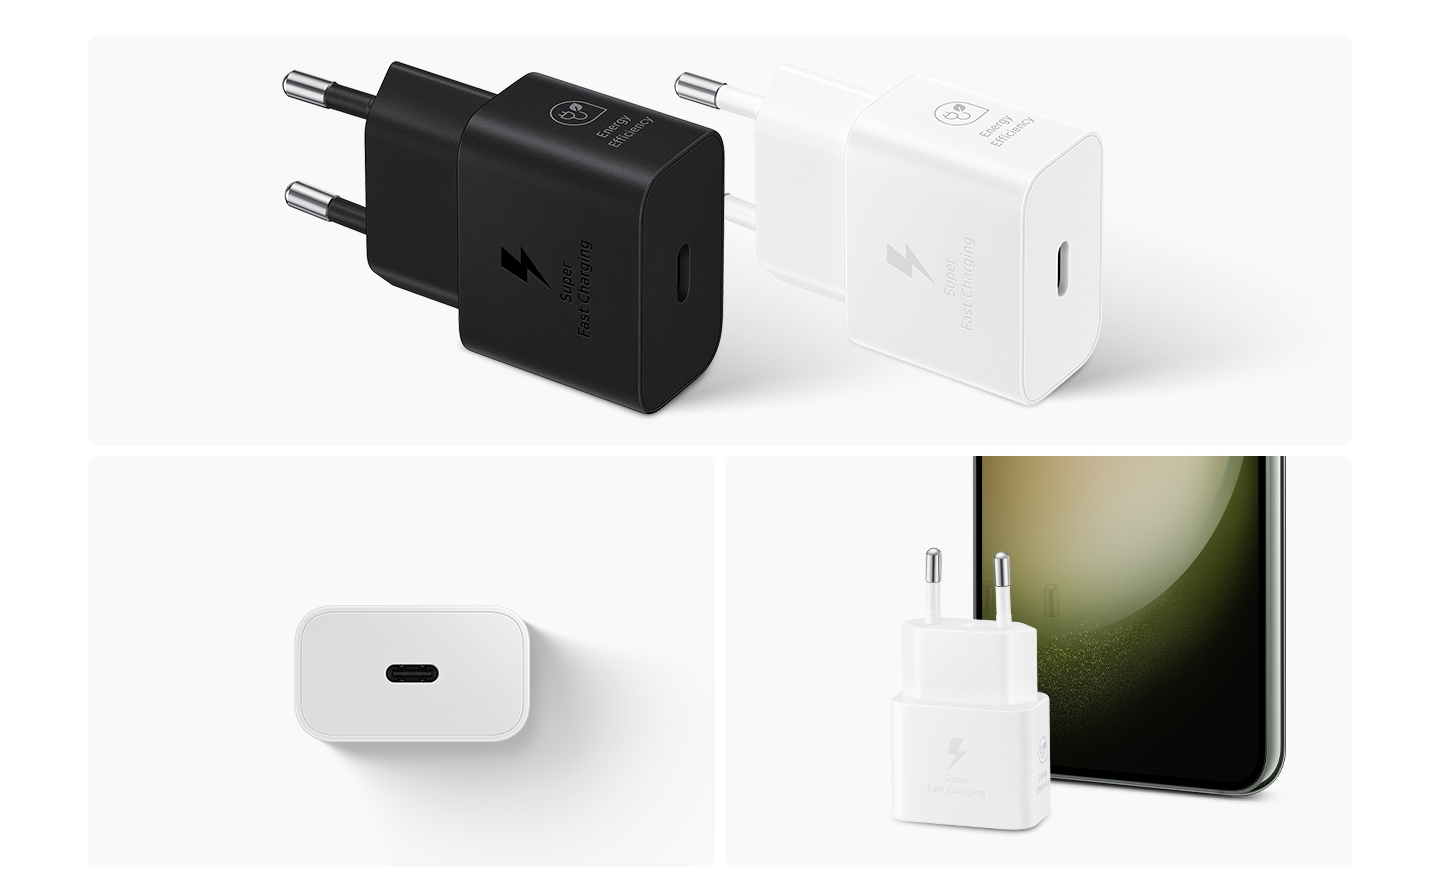 Oben sind zwei 25-W-Netzteile in Schwarz und Weiß abgebildet.  Unten links zeigt ein weißes Netzteil die Seite mit dem USB-C-Anschluss.  Unten rechts ist ein weißes Netzteil vor einem Galaxy-Smartphone platziert.